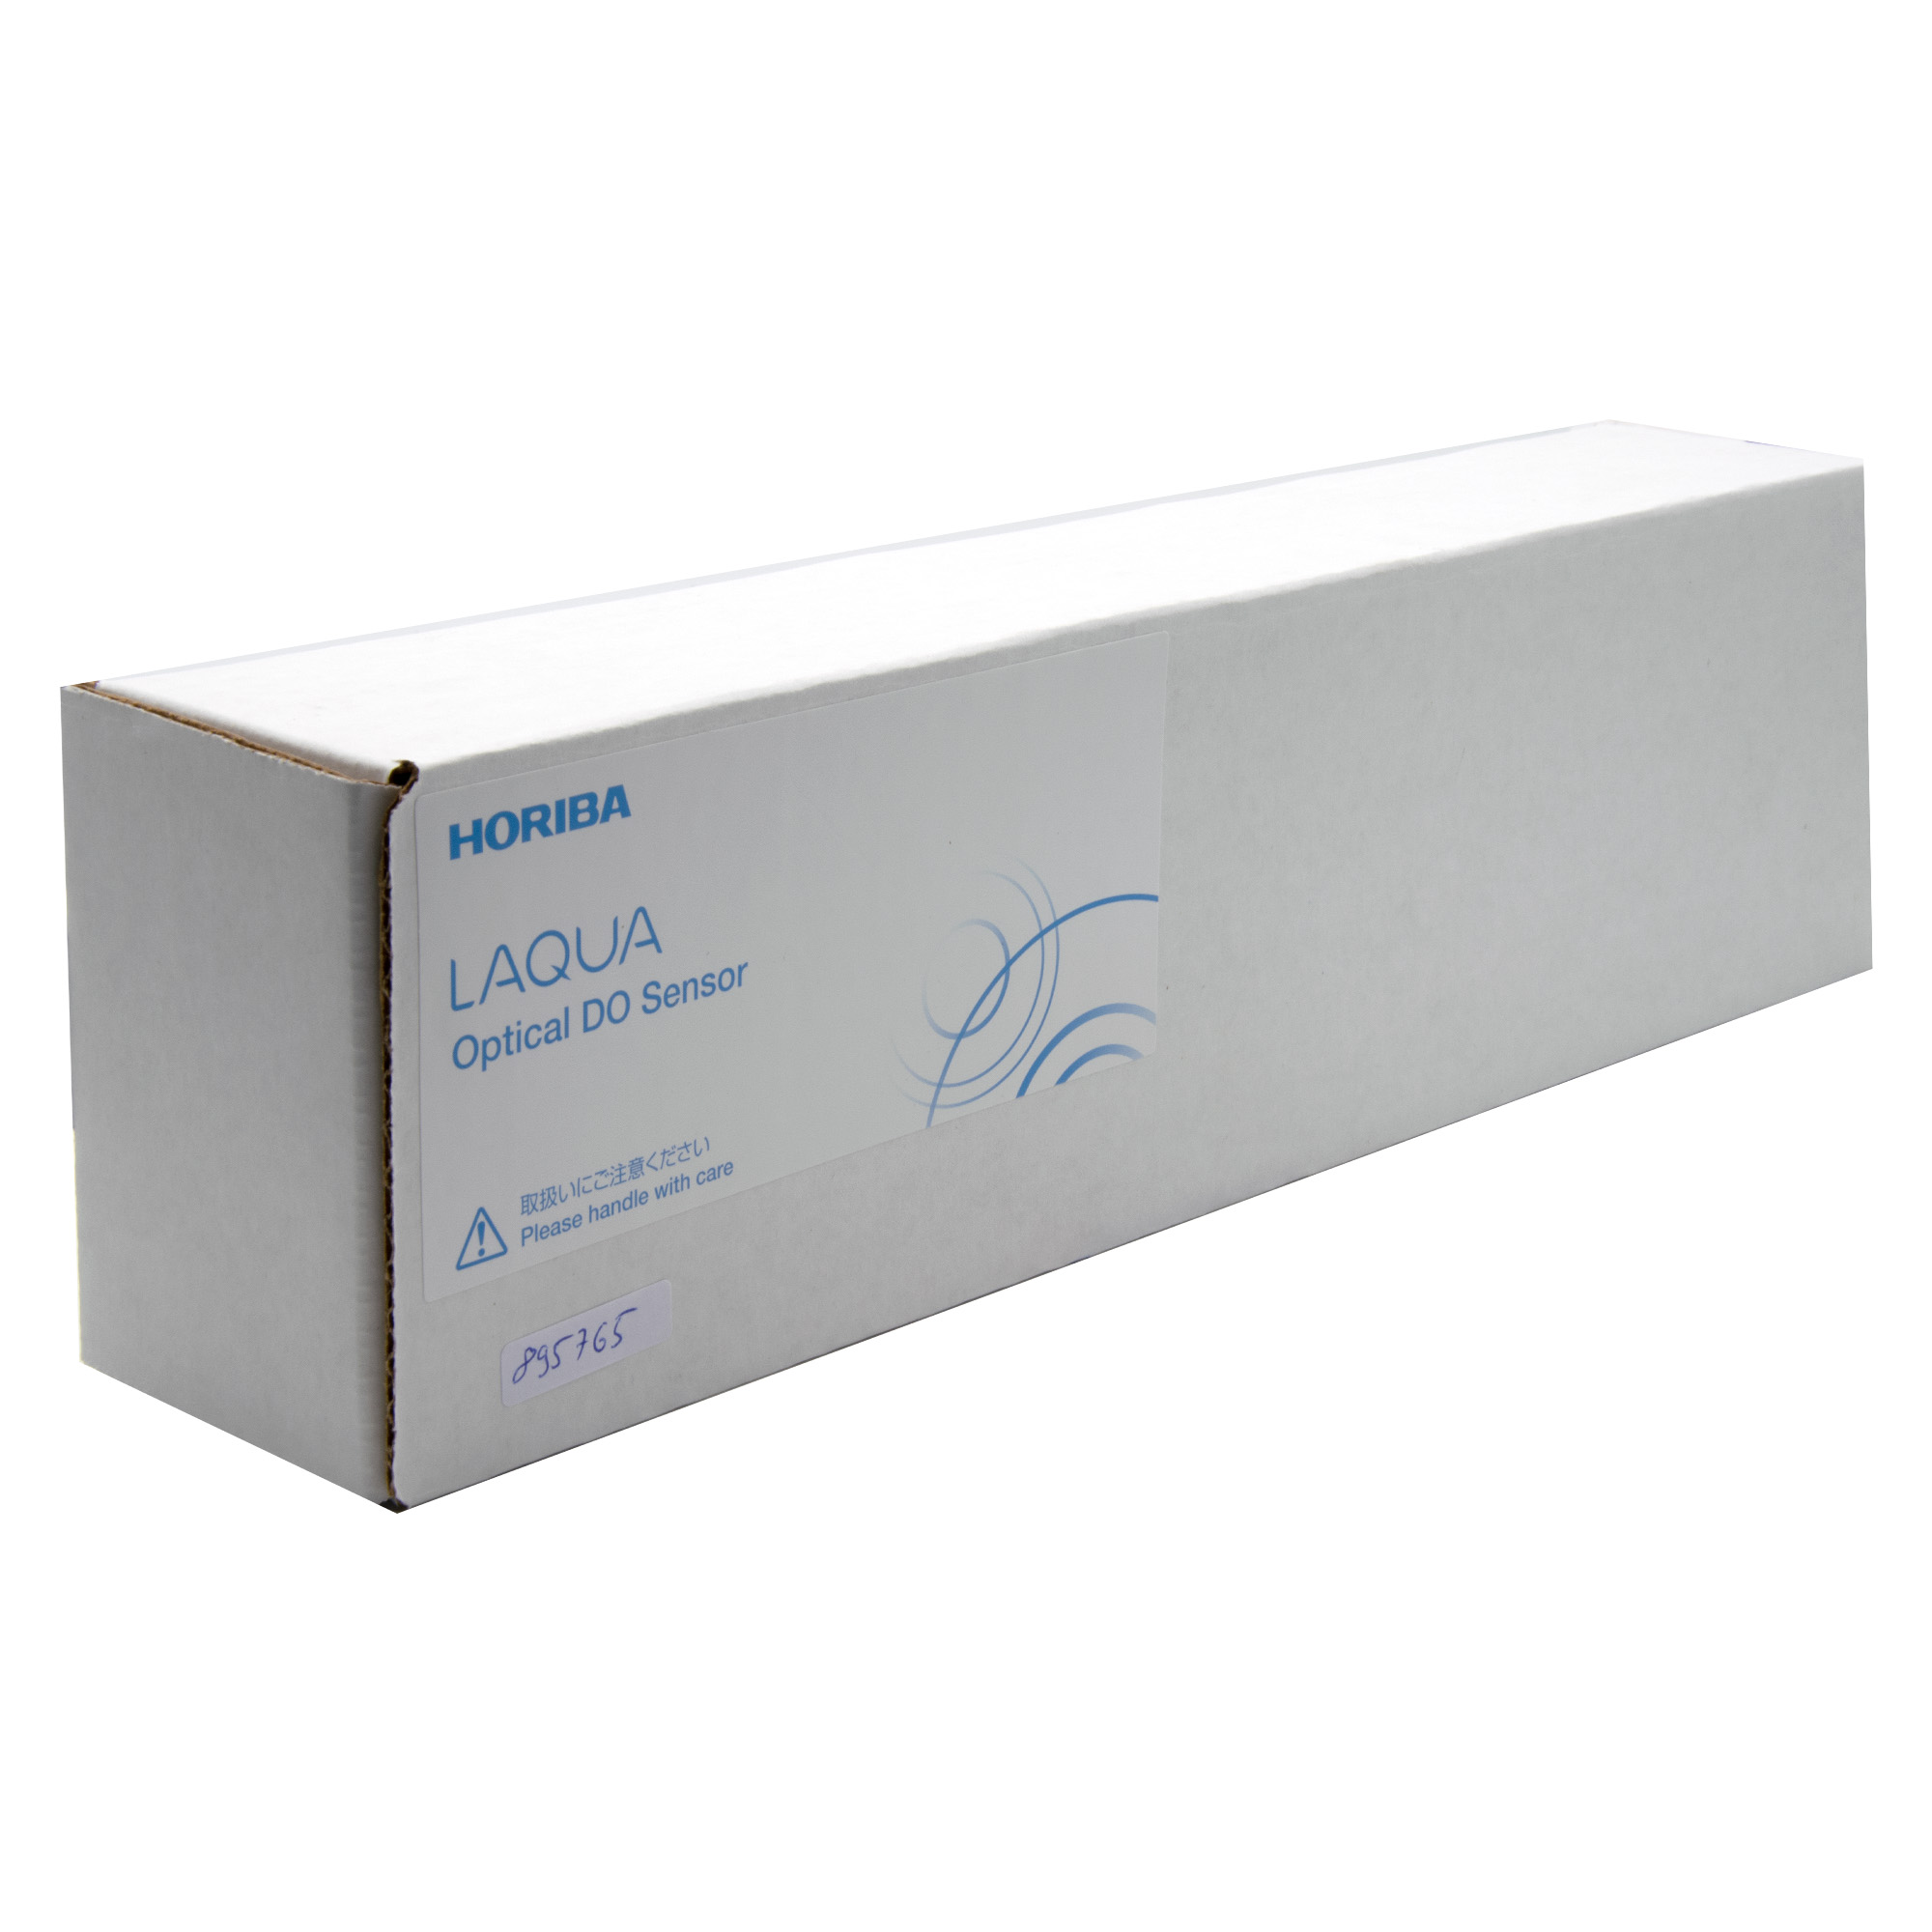 Horiba LAQUA 300-D-5 optical oxygen sensor for LAQUA 300 series